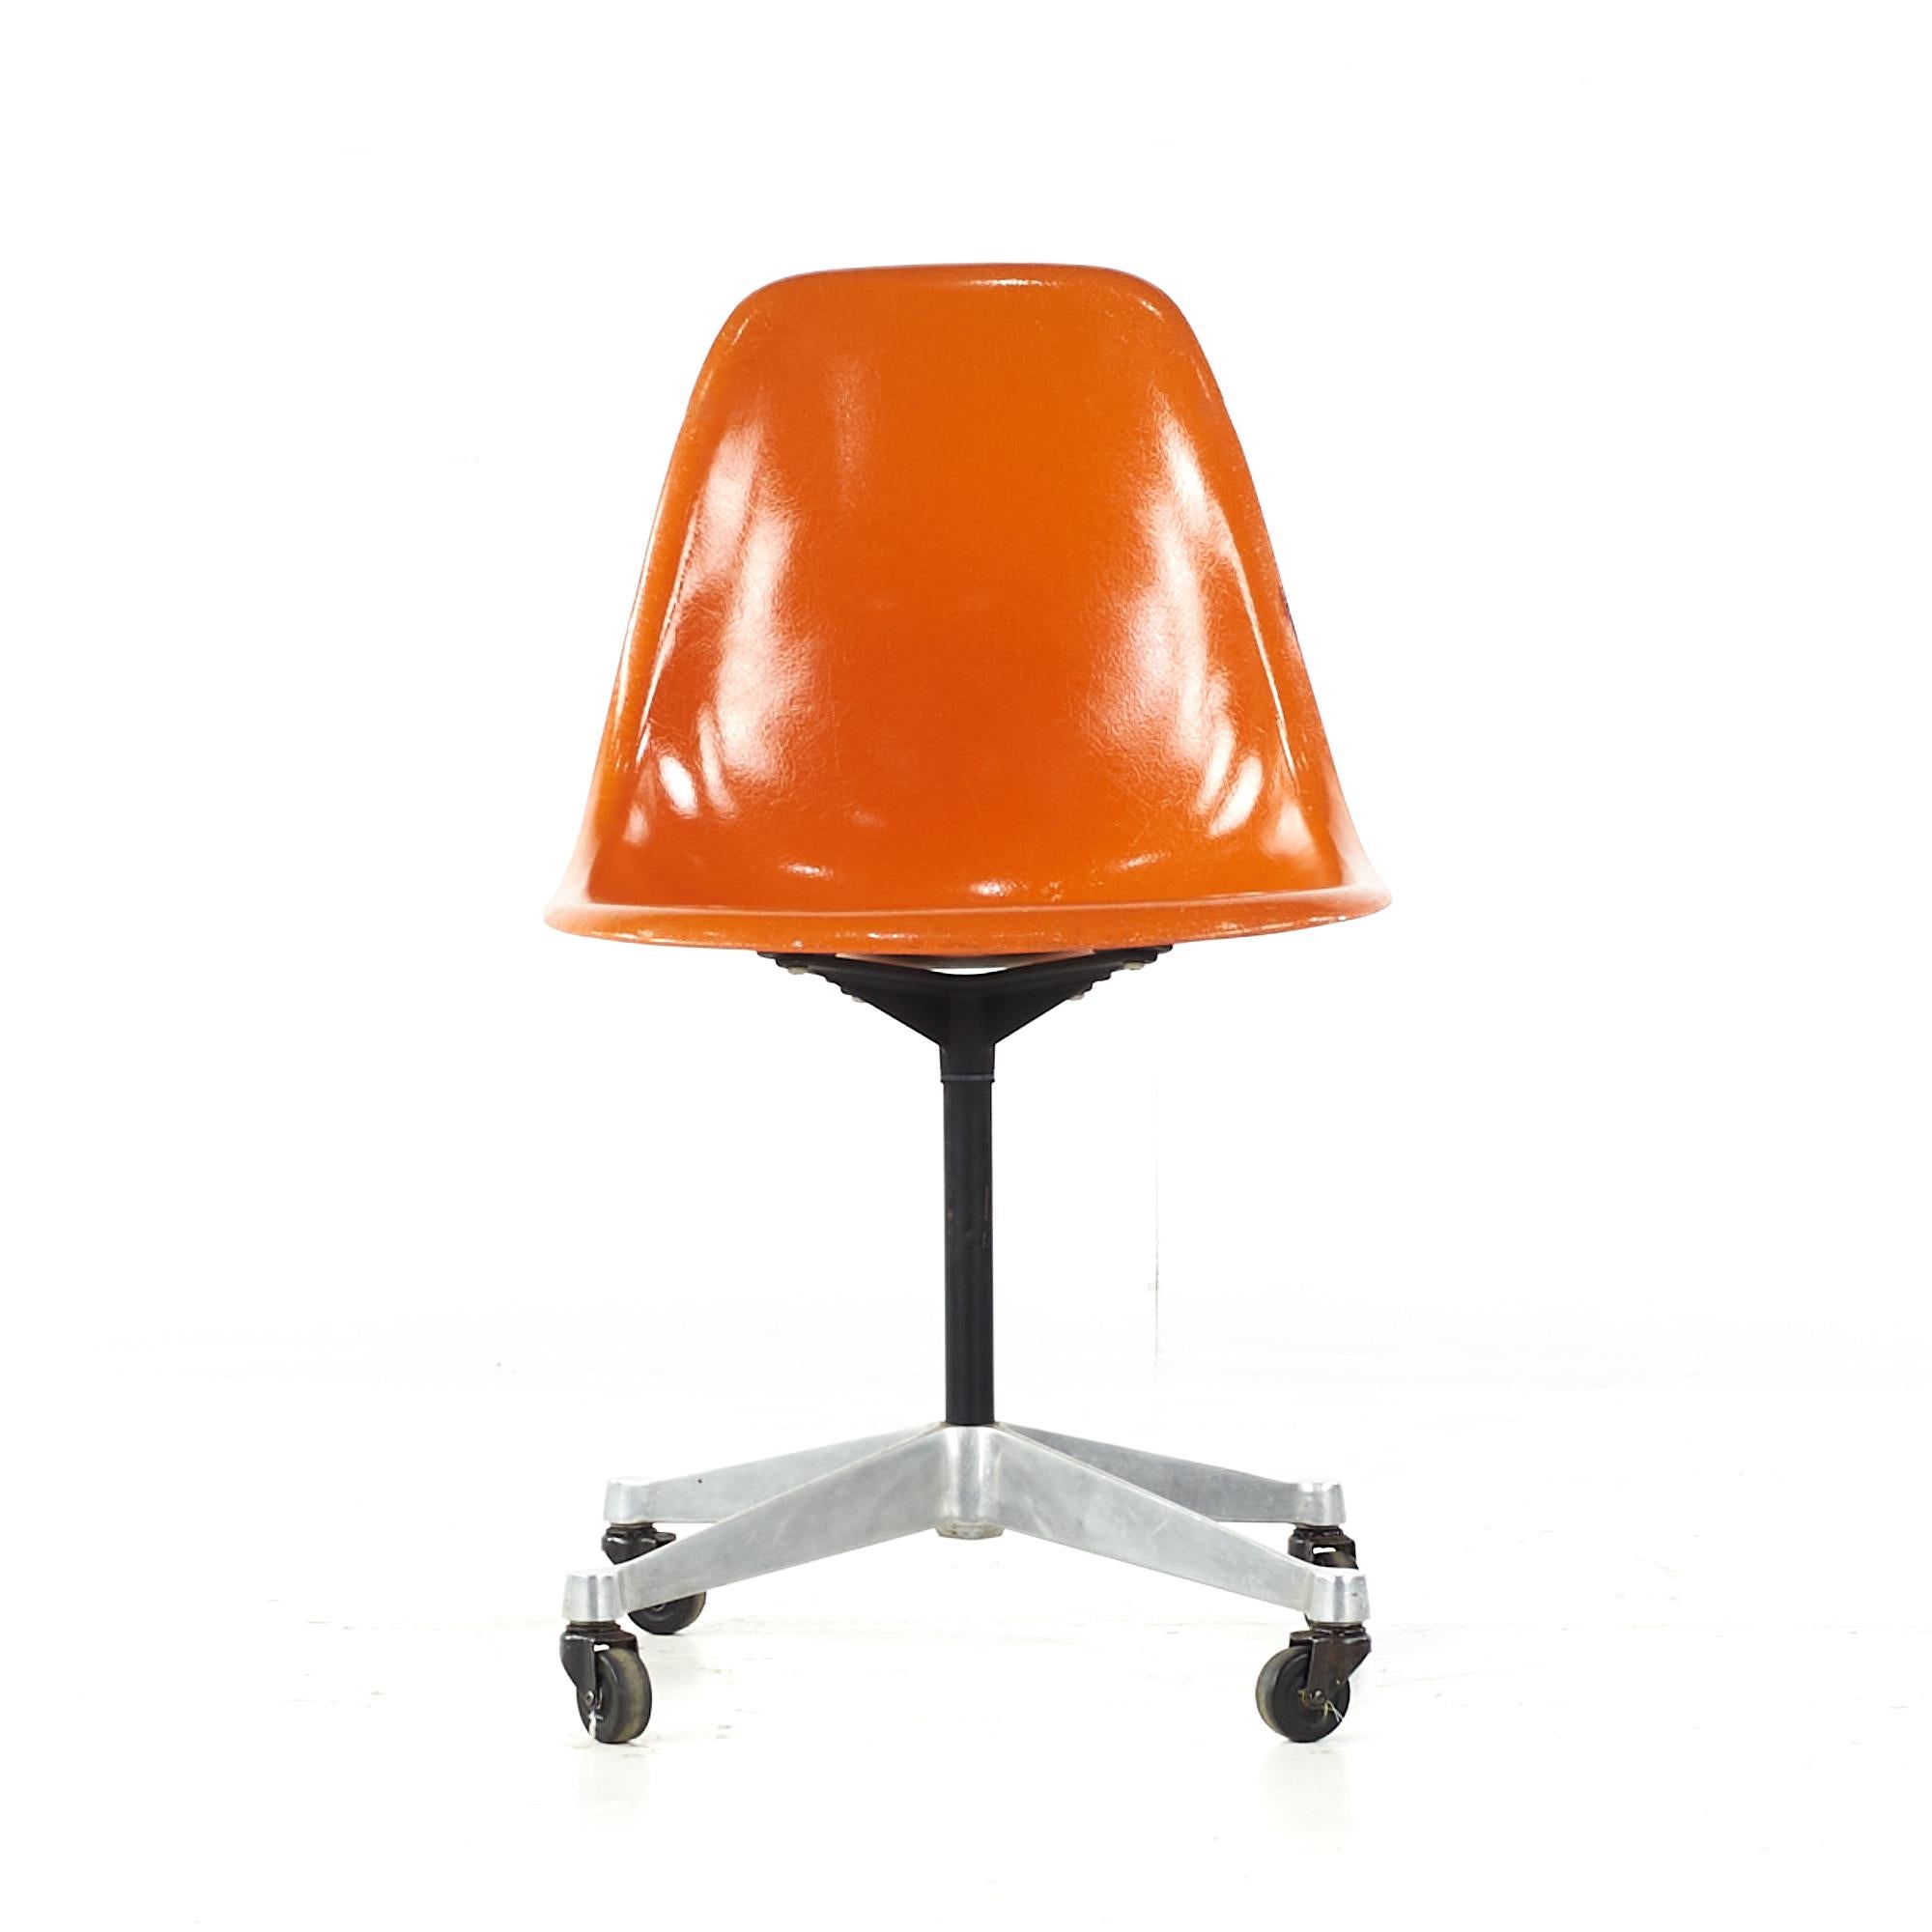 Charles et Ray Eames pour Herman Miller Chaise à roulettes Shell du milieu du siècle dernier

Cette chaise mesure : 18.5 de large x 24 de profond x 32 de haut, avec une hauteur d'assise de 17.5 pouces.

Tous les meubles peuvent être achetés dans ce